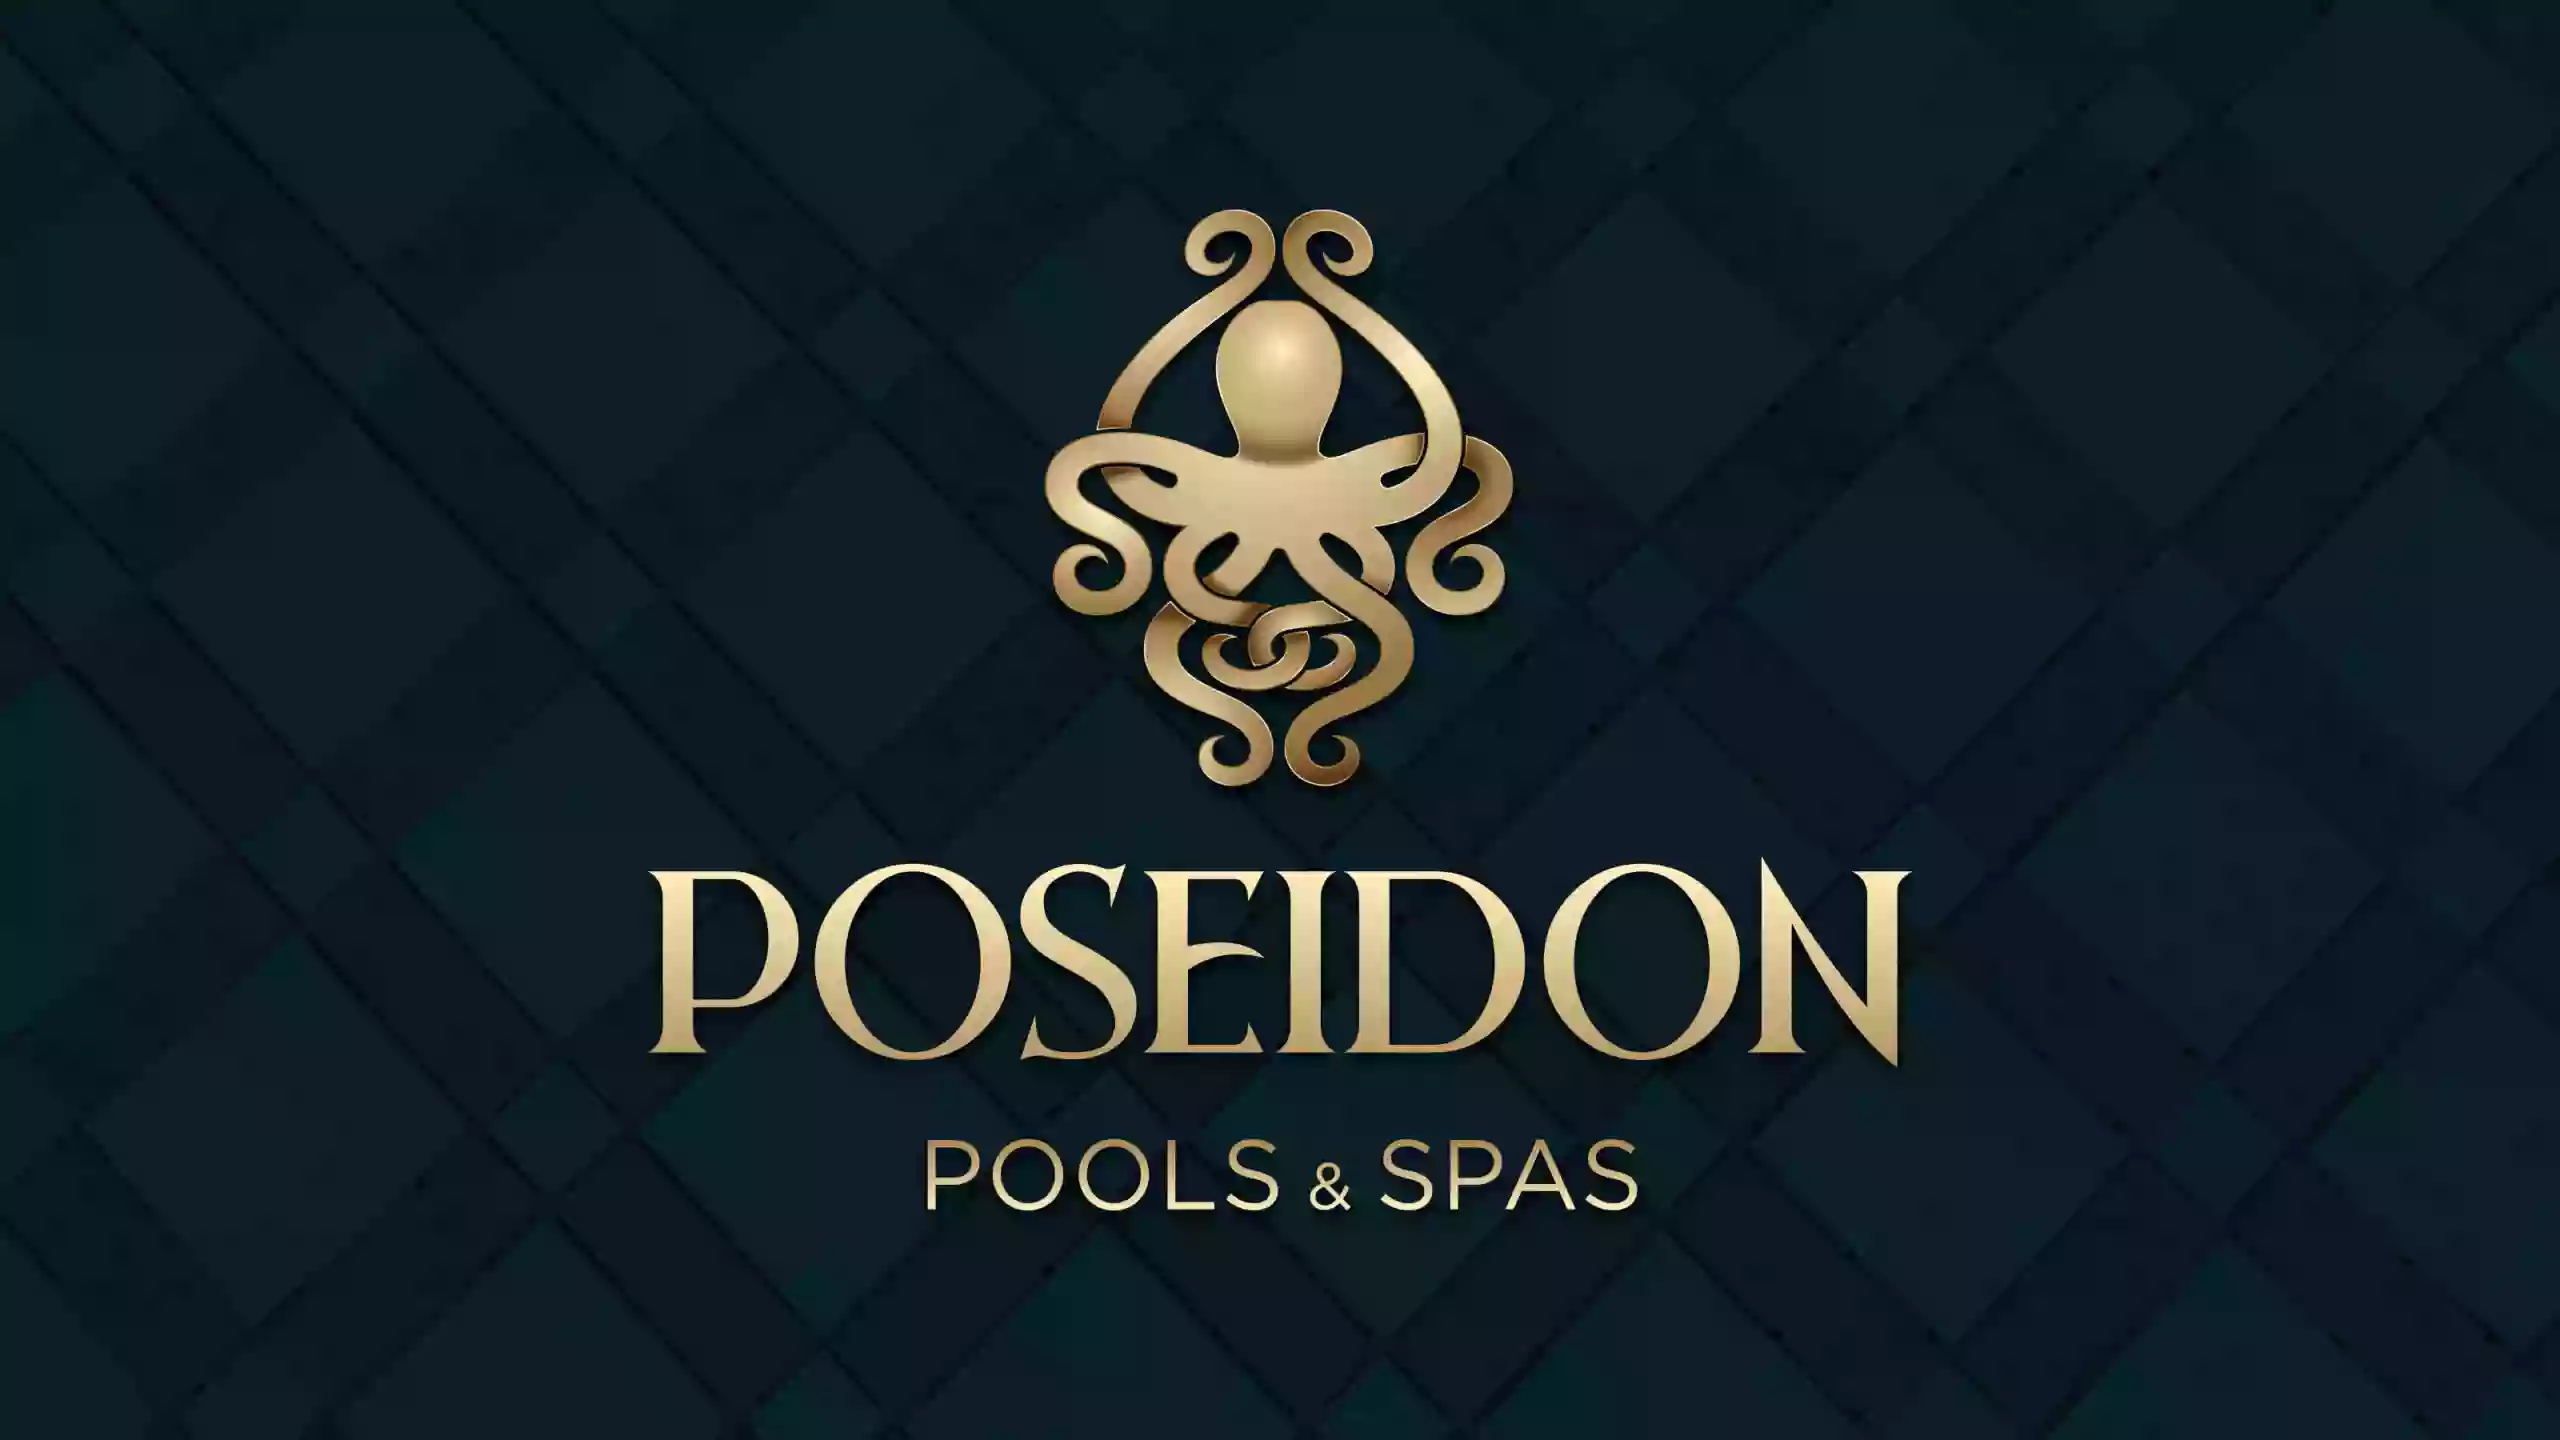 Poseidon Pools and Spas Las Vegas